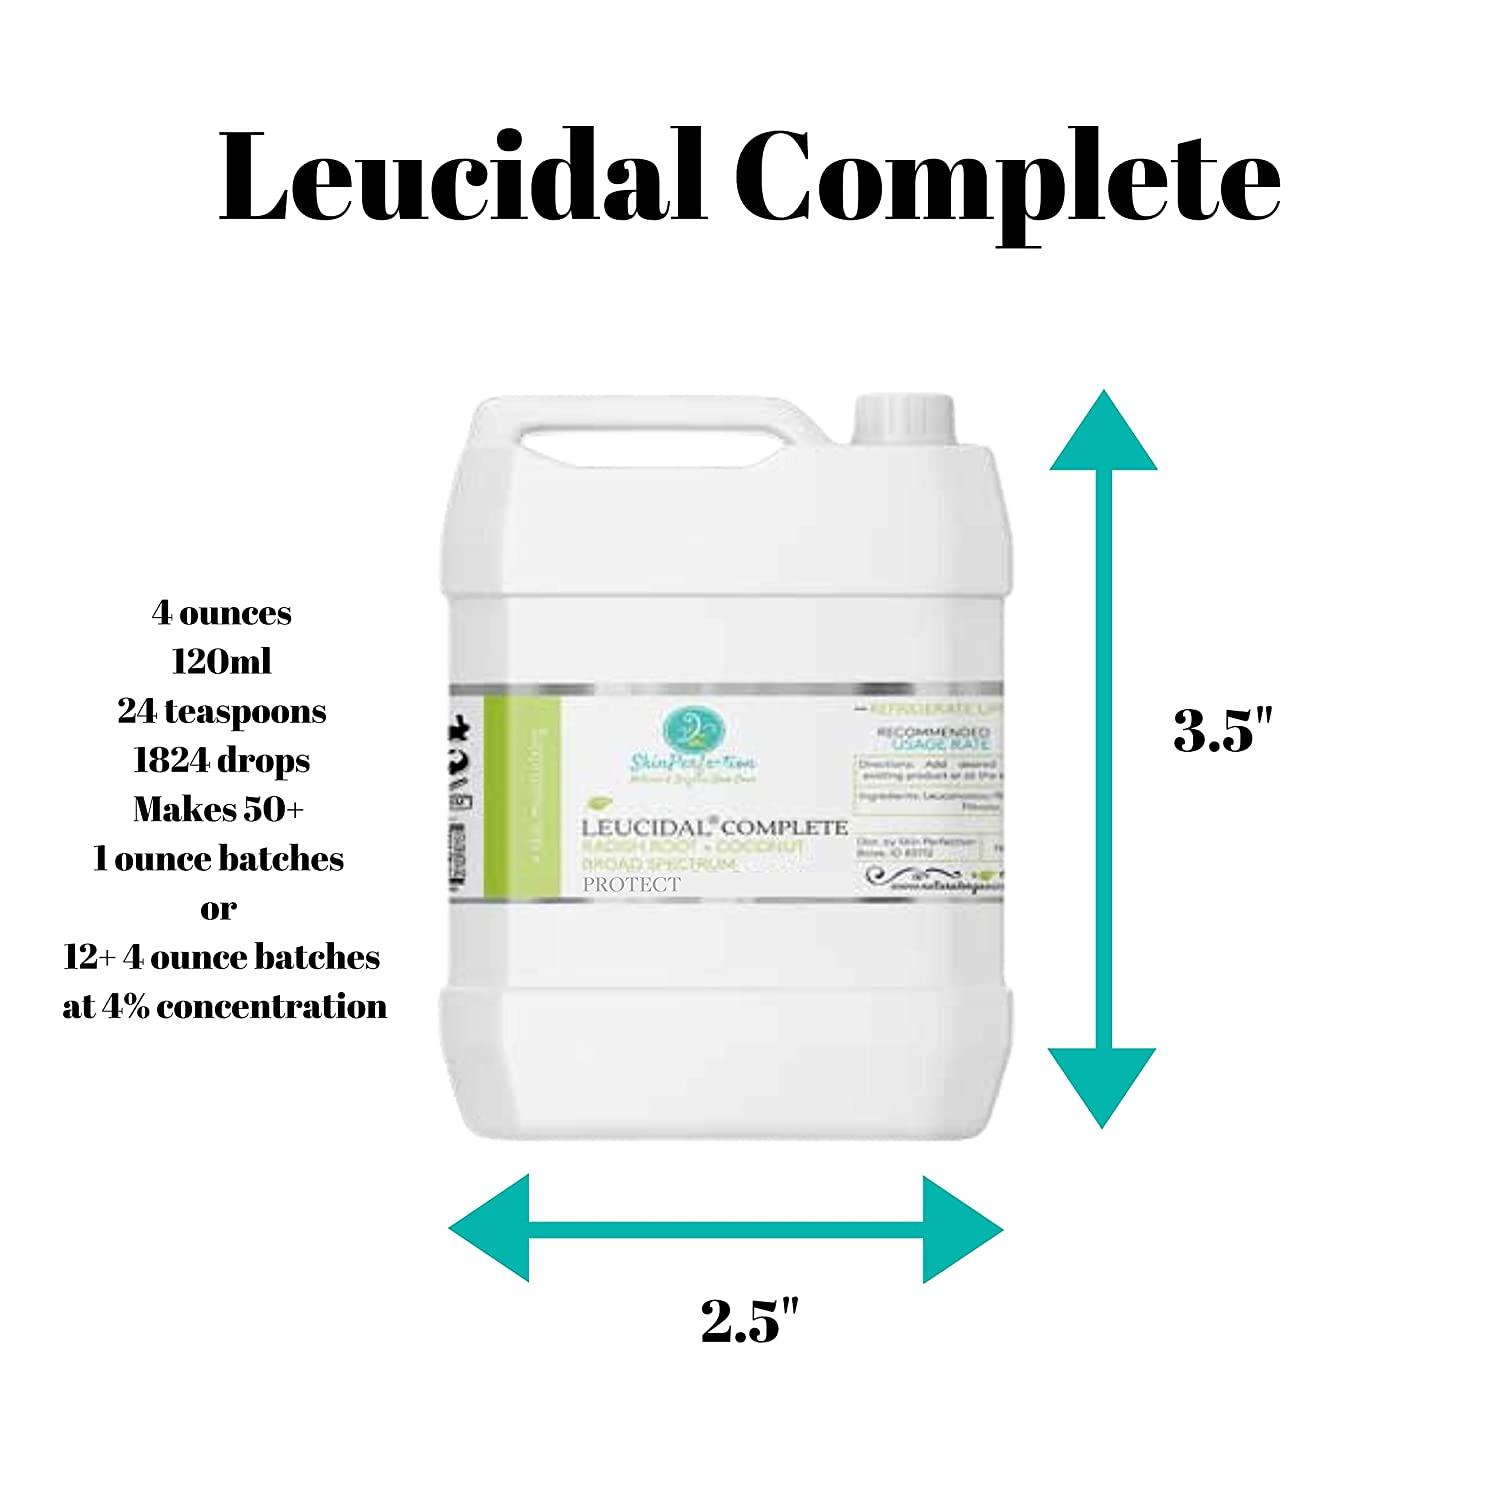 Leucidal® Liquid SF 8 Oz. Preservative 100% Pure Natural